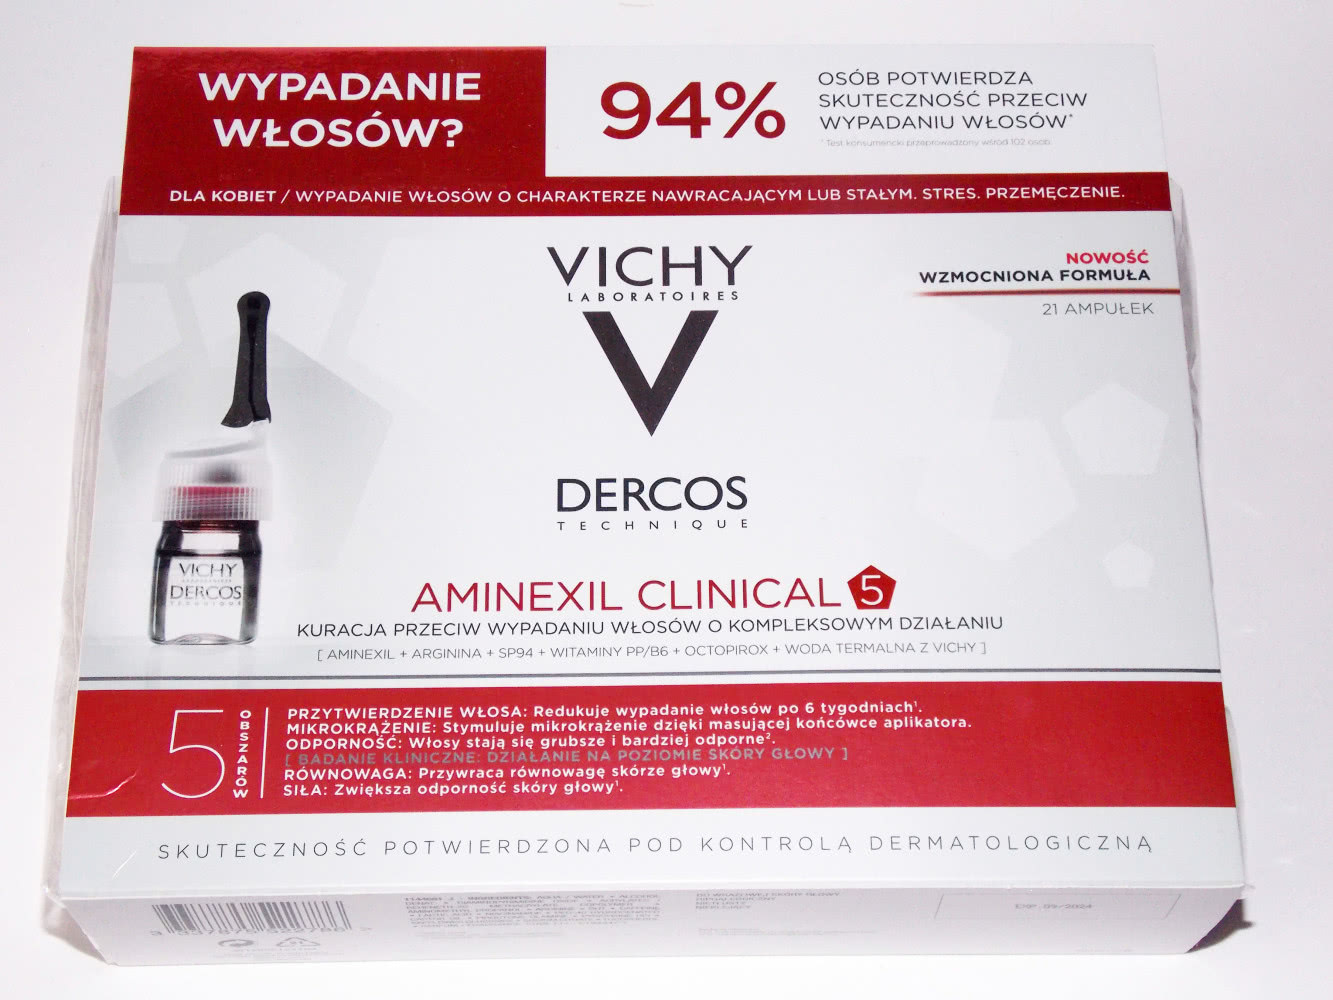 Vichy dercos aminexil intensive 5 средство против выпадения волос для женщин 21х6мл